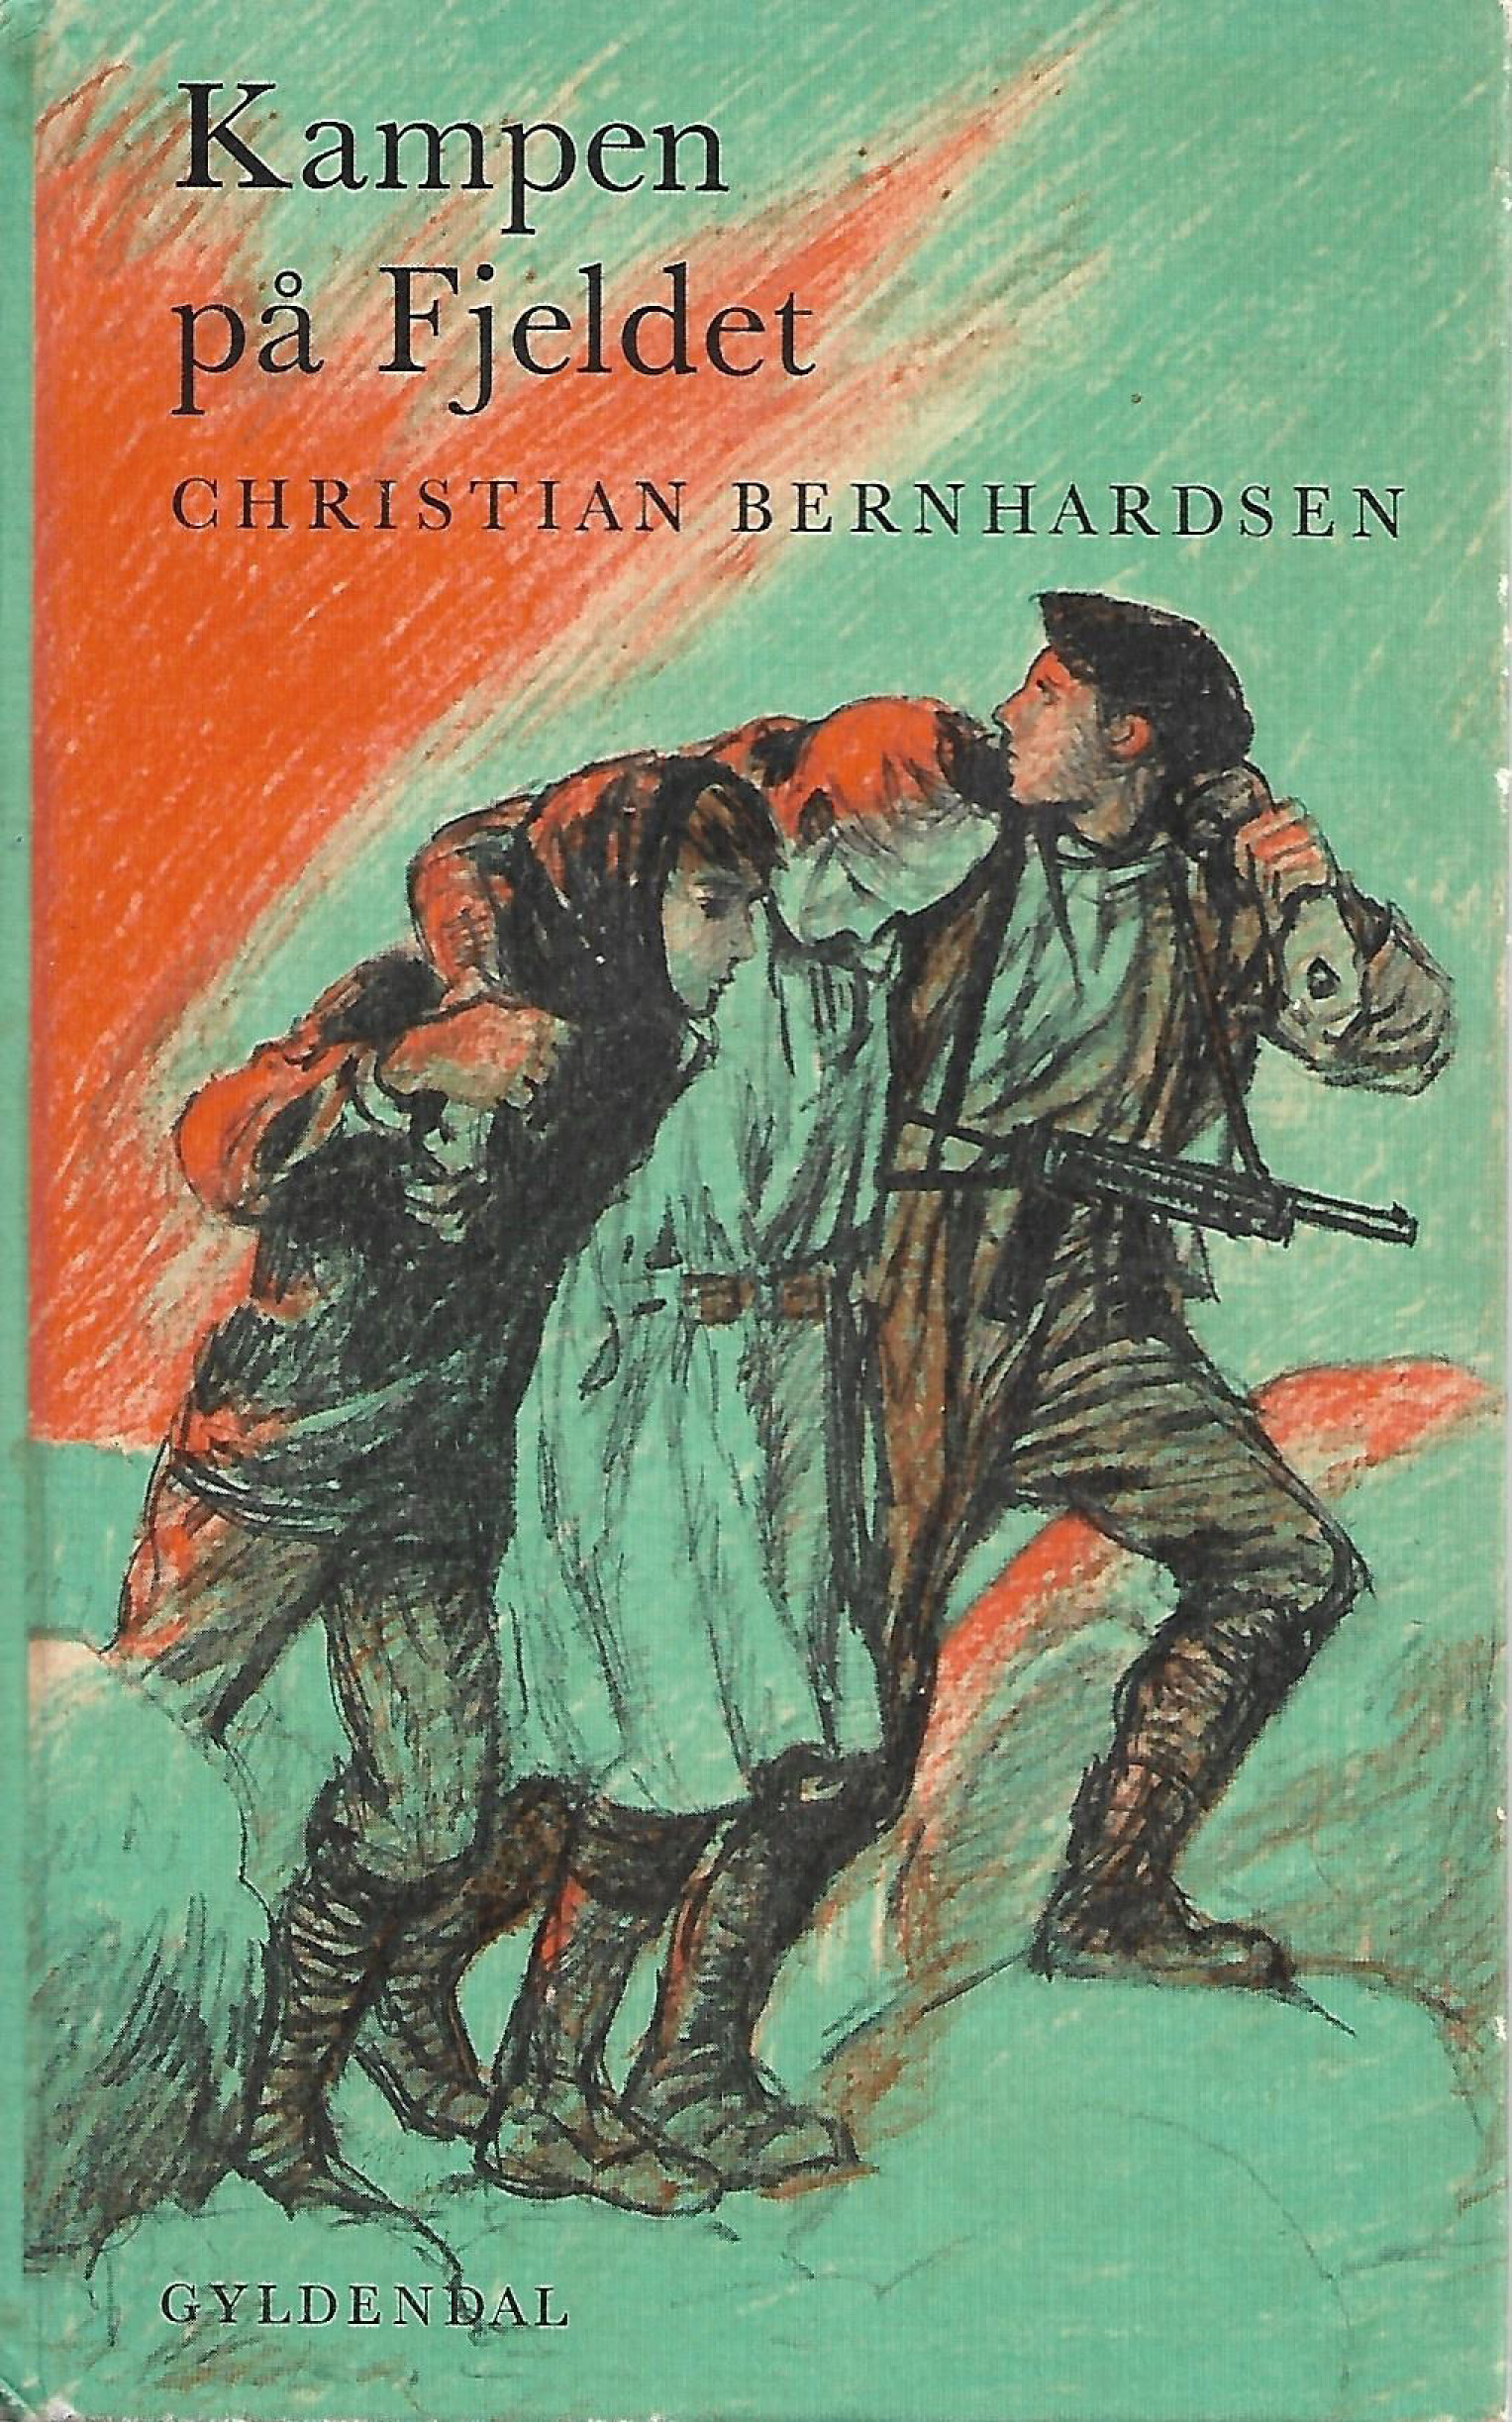 Kampen på fjeldet - Christian Bernhardsen-1